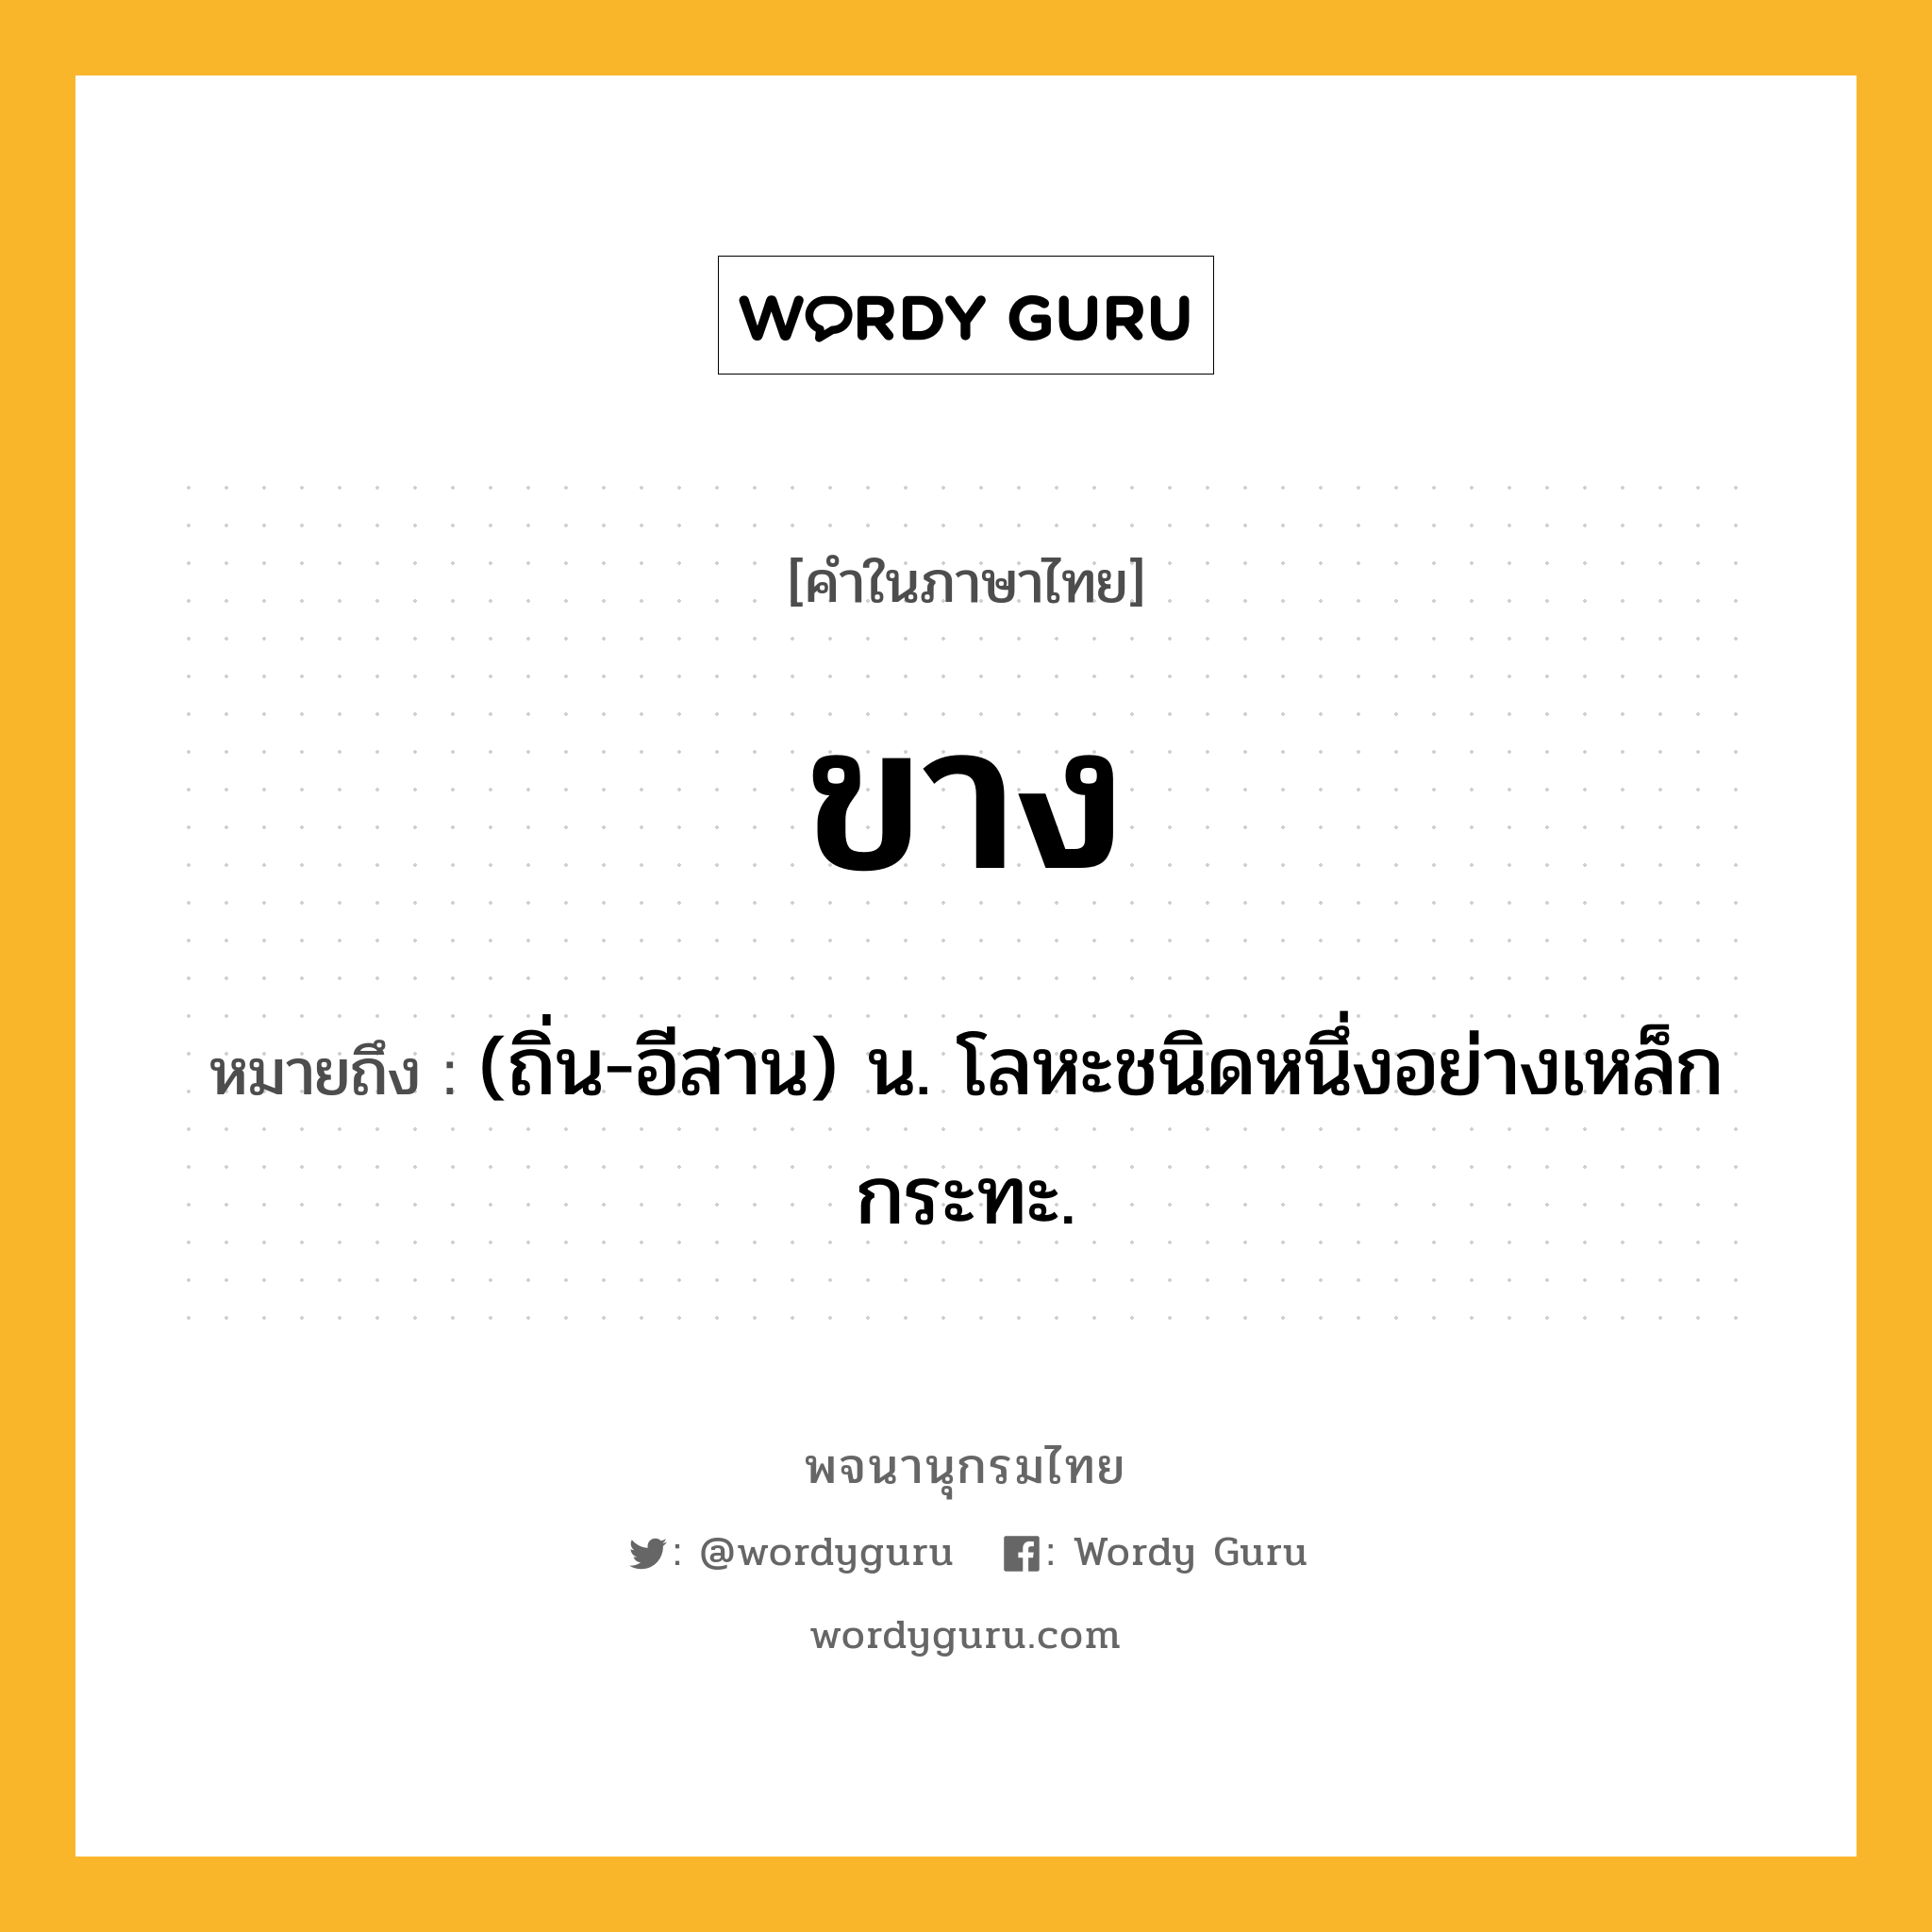 ขาง หมายถึงอะไร?, คำในภาษาไทย ขาง หมายถึง (ถิ่น-อีสาน) น. โลหะชนิดหนึ่งอย่างเหล็กกระทะ.